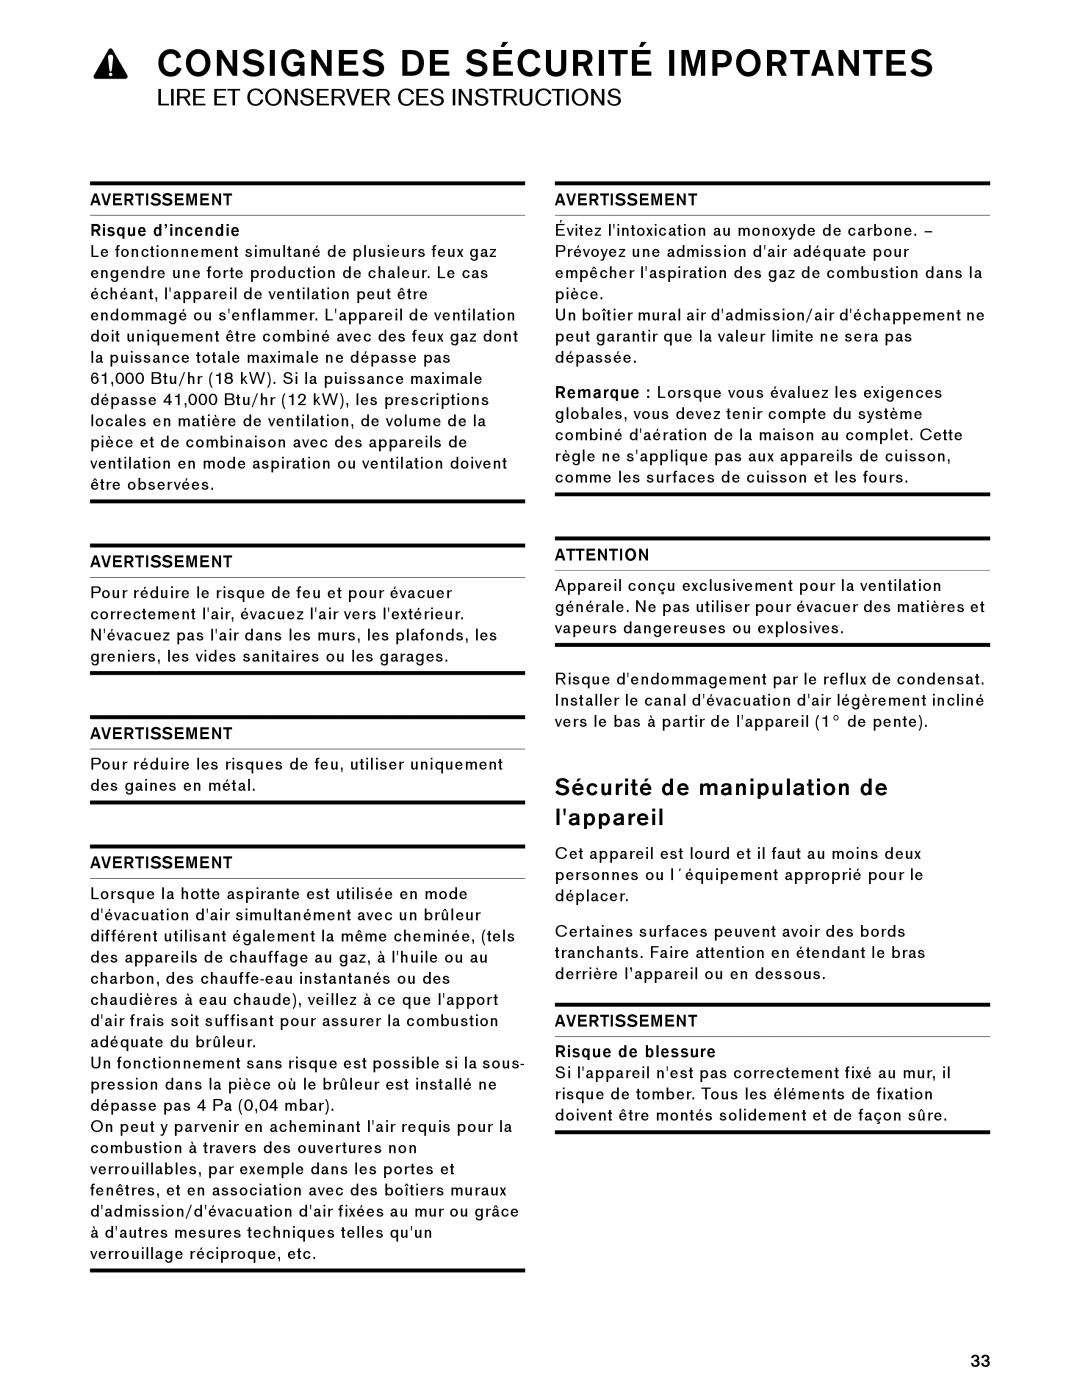 Gaggenau AW 230 790 manual Sécurité de manipulation de lappareil, Consignes De Sécurité Importantes, Avertissement 